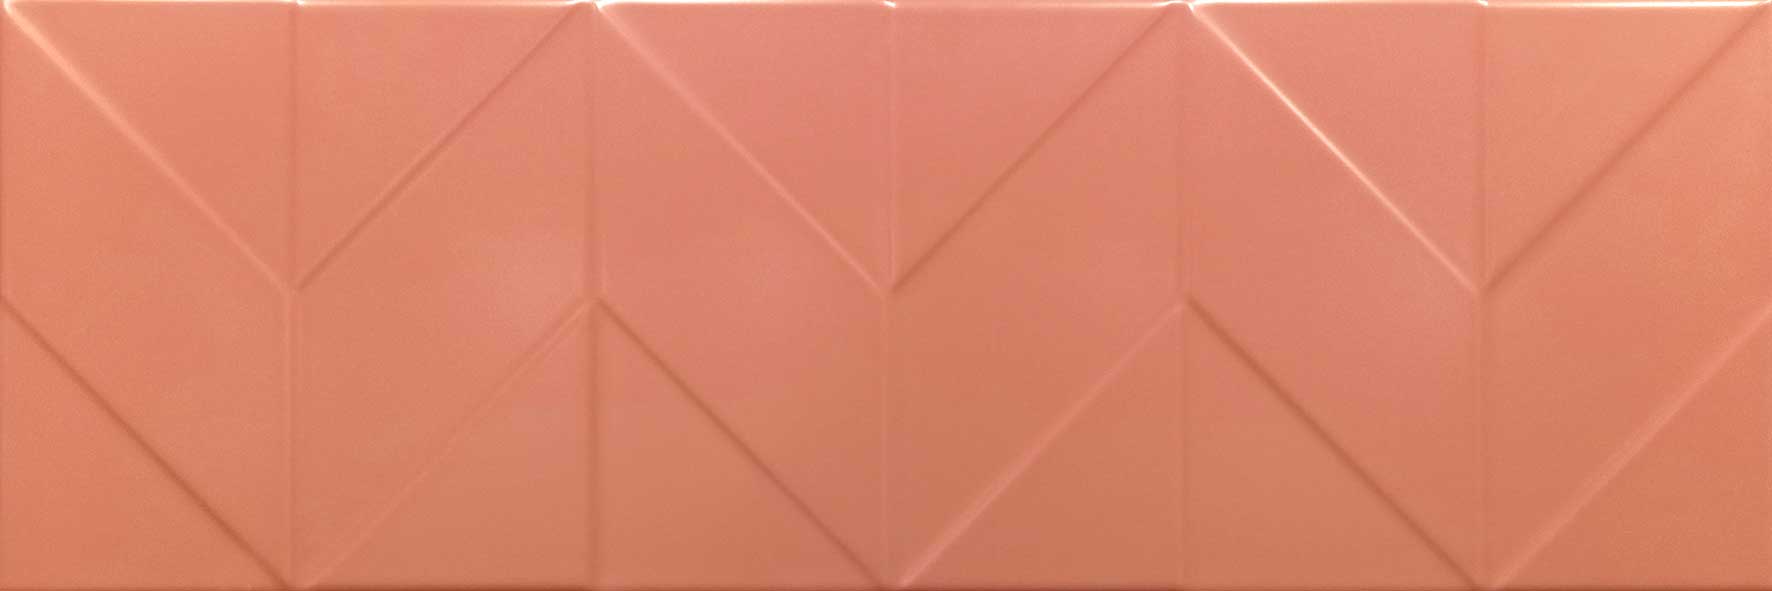 Керамическая плитка Керамин Танага 6Д Бежевый, цвет бежевый, поверхность сатинированная, прямоугольник, 250x750